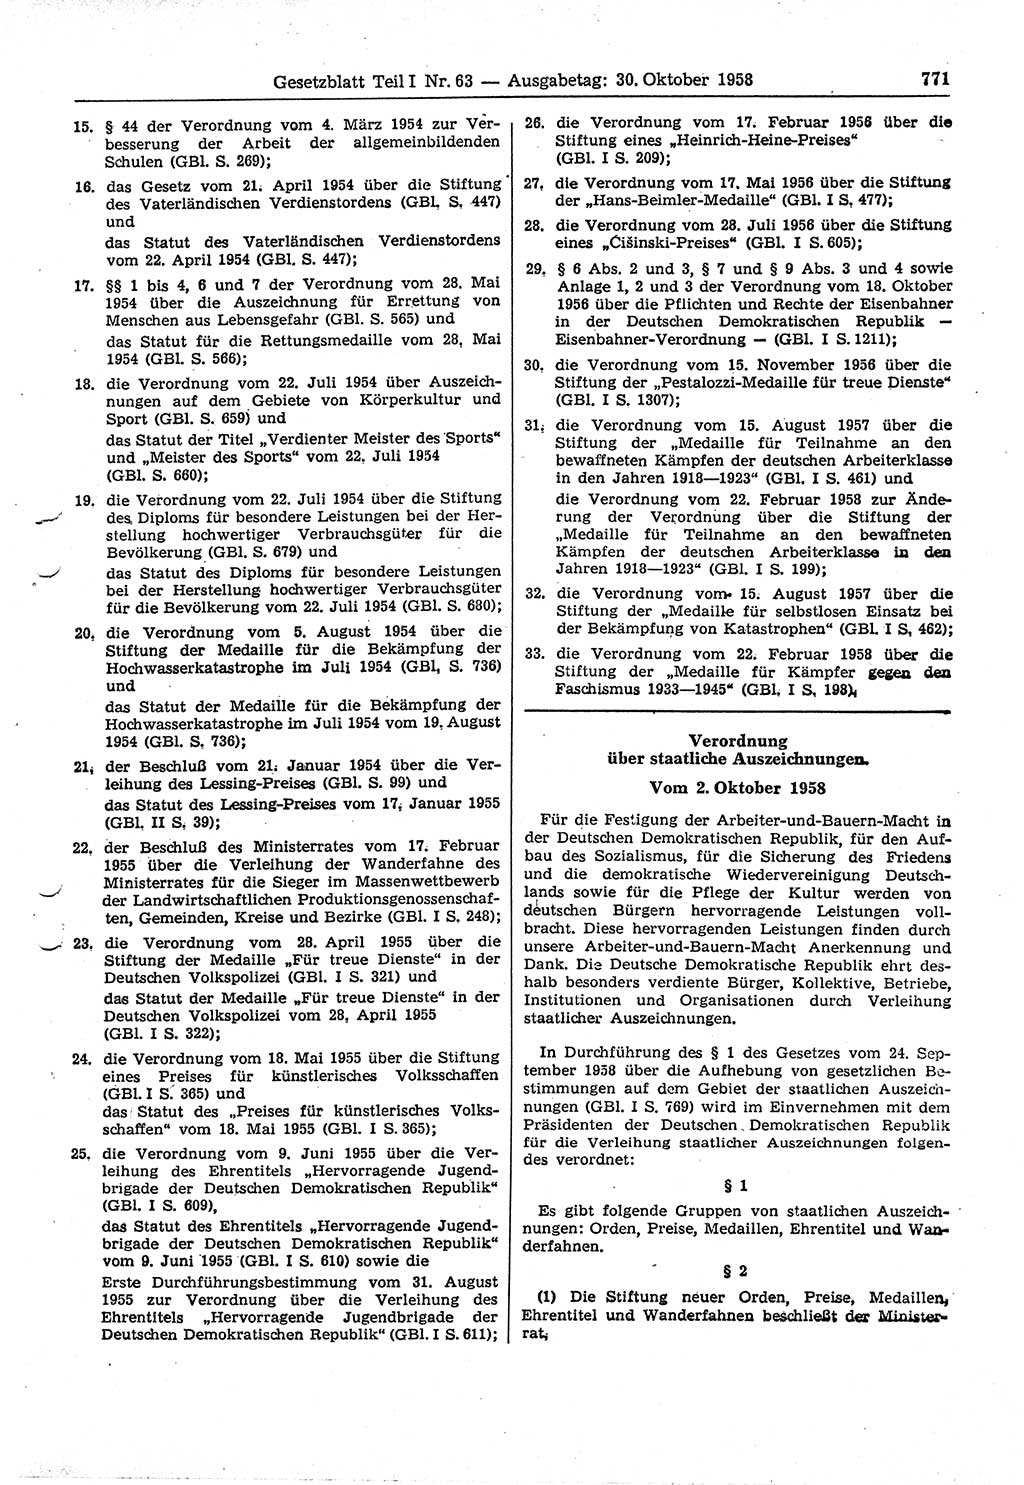 Gesetzblatt (GBl.) der Deutschen Demokratischen Republik (DDR) Teil Ⅰ 1958, Seite 771 (GBl. DDR Ⅰ 1958, S. 771)